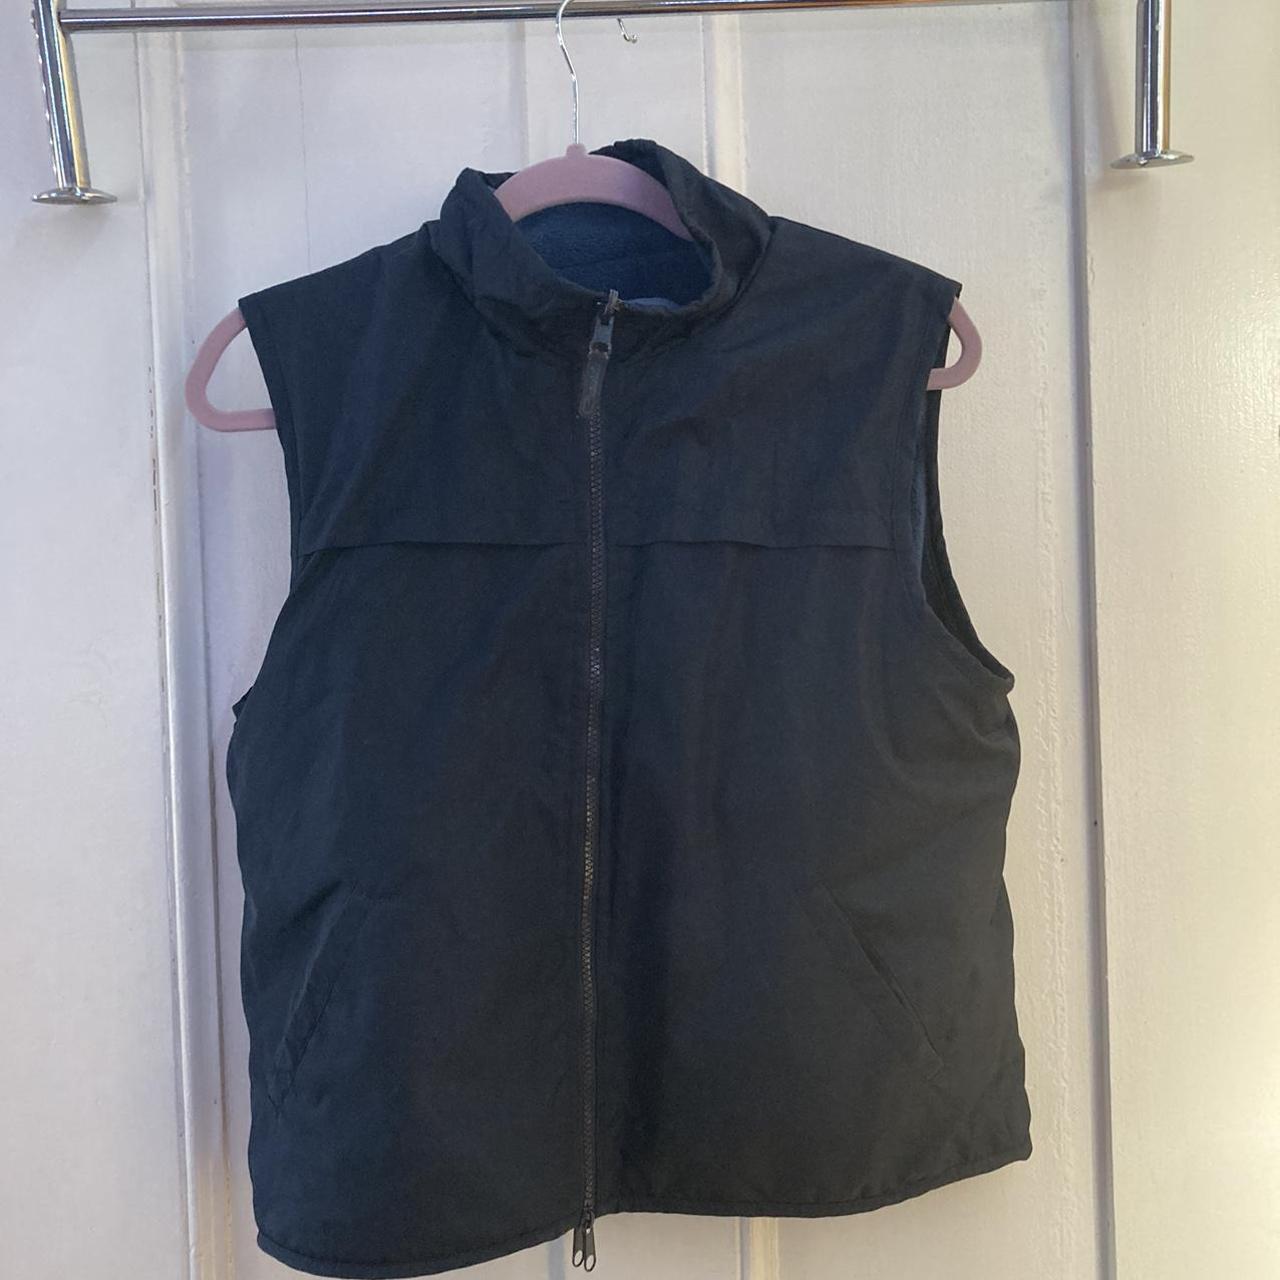 Catalina reversible vest. Navy fleece and black... - Depop